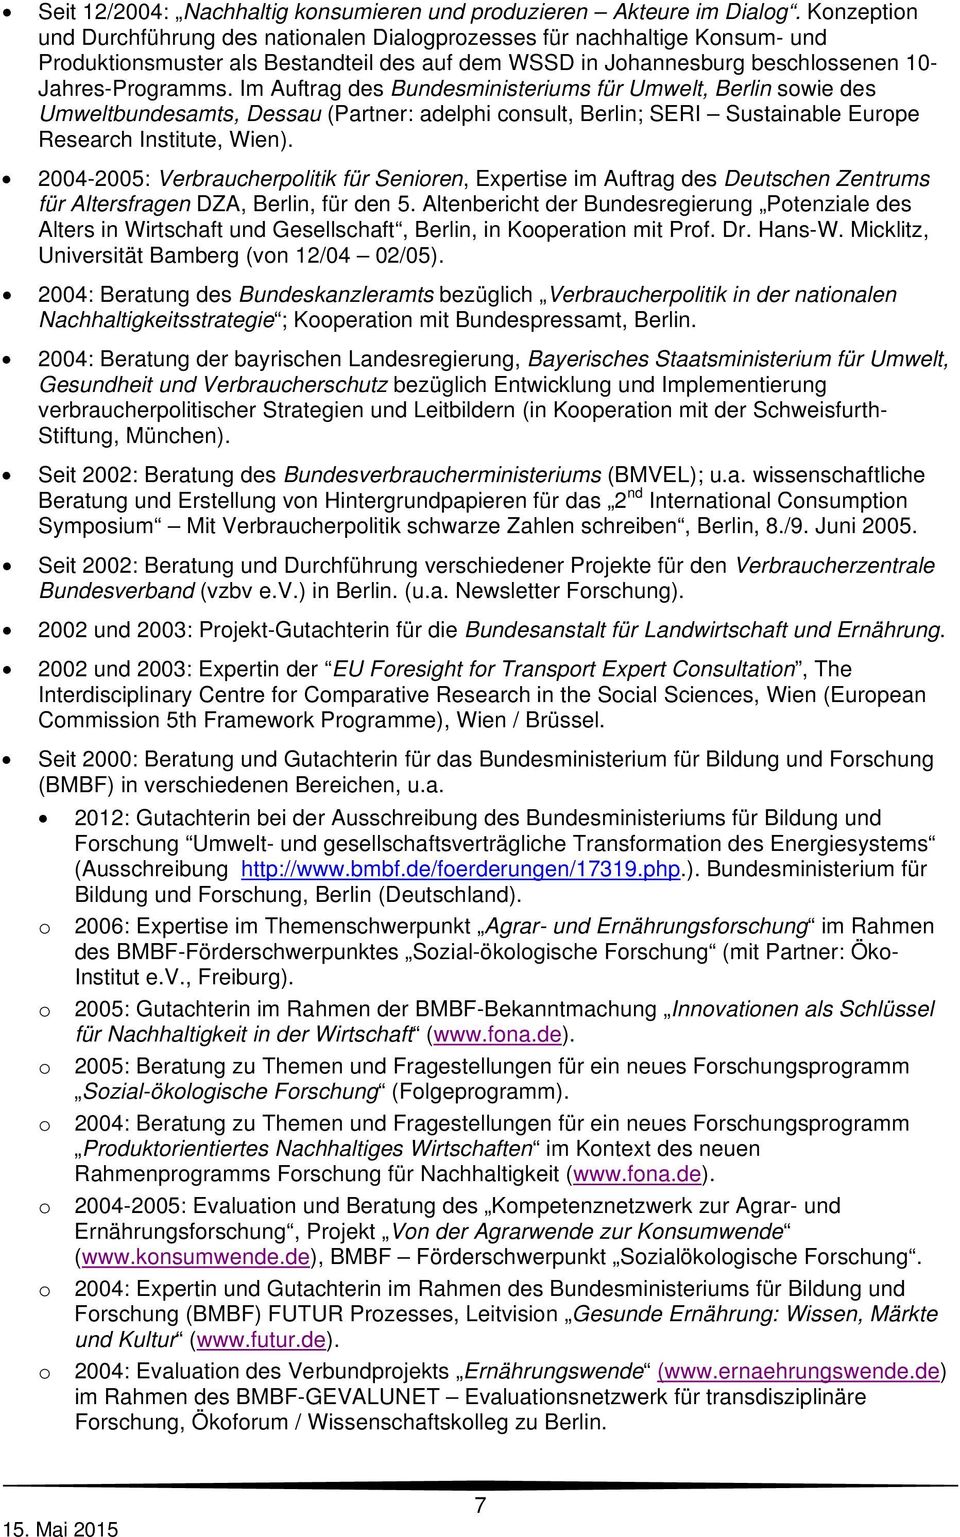 Im Auftrag des Bundesministeriums für Umwelt, Berlin swie des Umweltbundesamts, Dessau (Partner: adelphi cnsult, Berlin; SERI Sustainable Eurpe Research Institute, Wien).